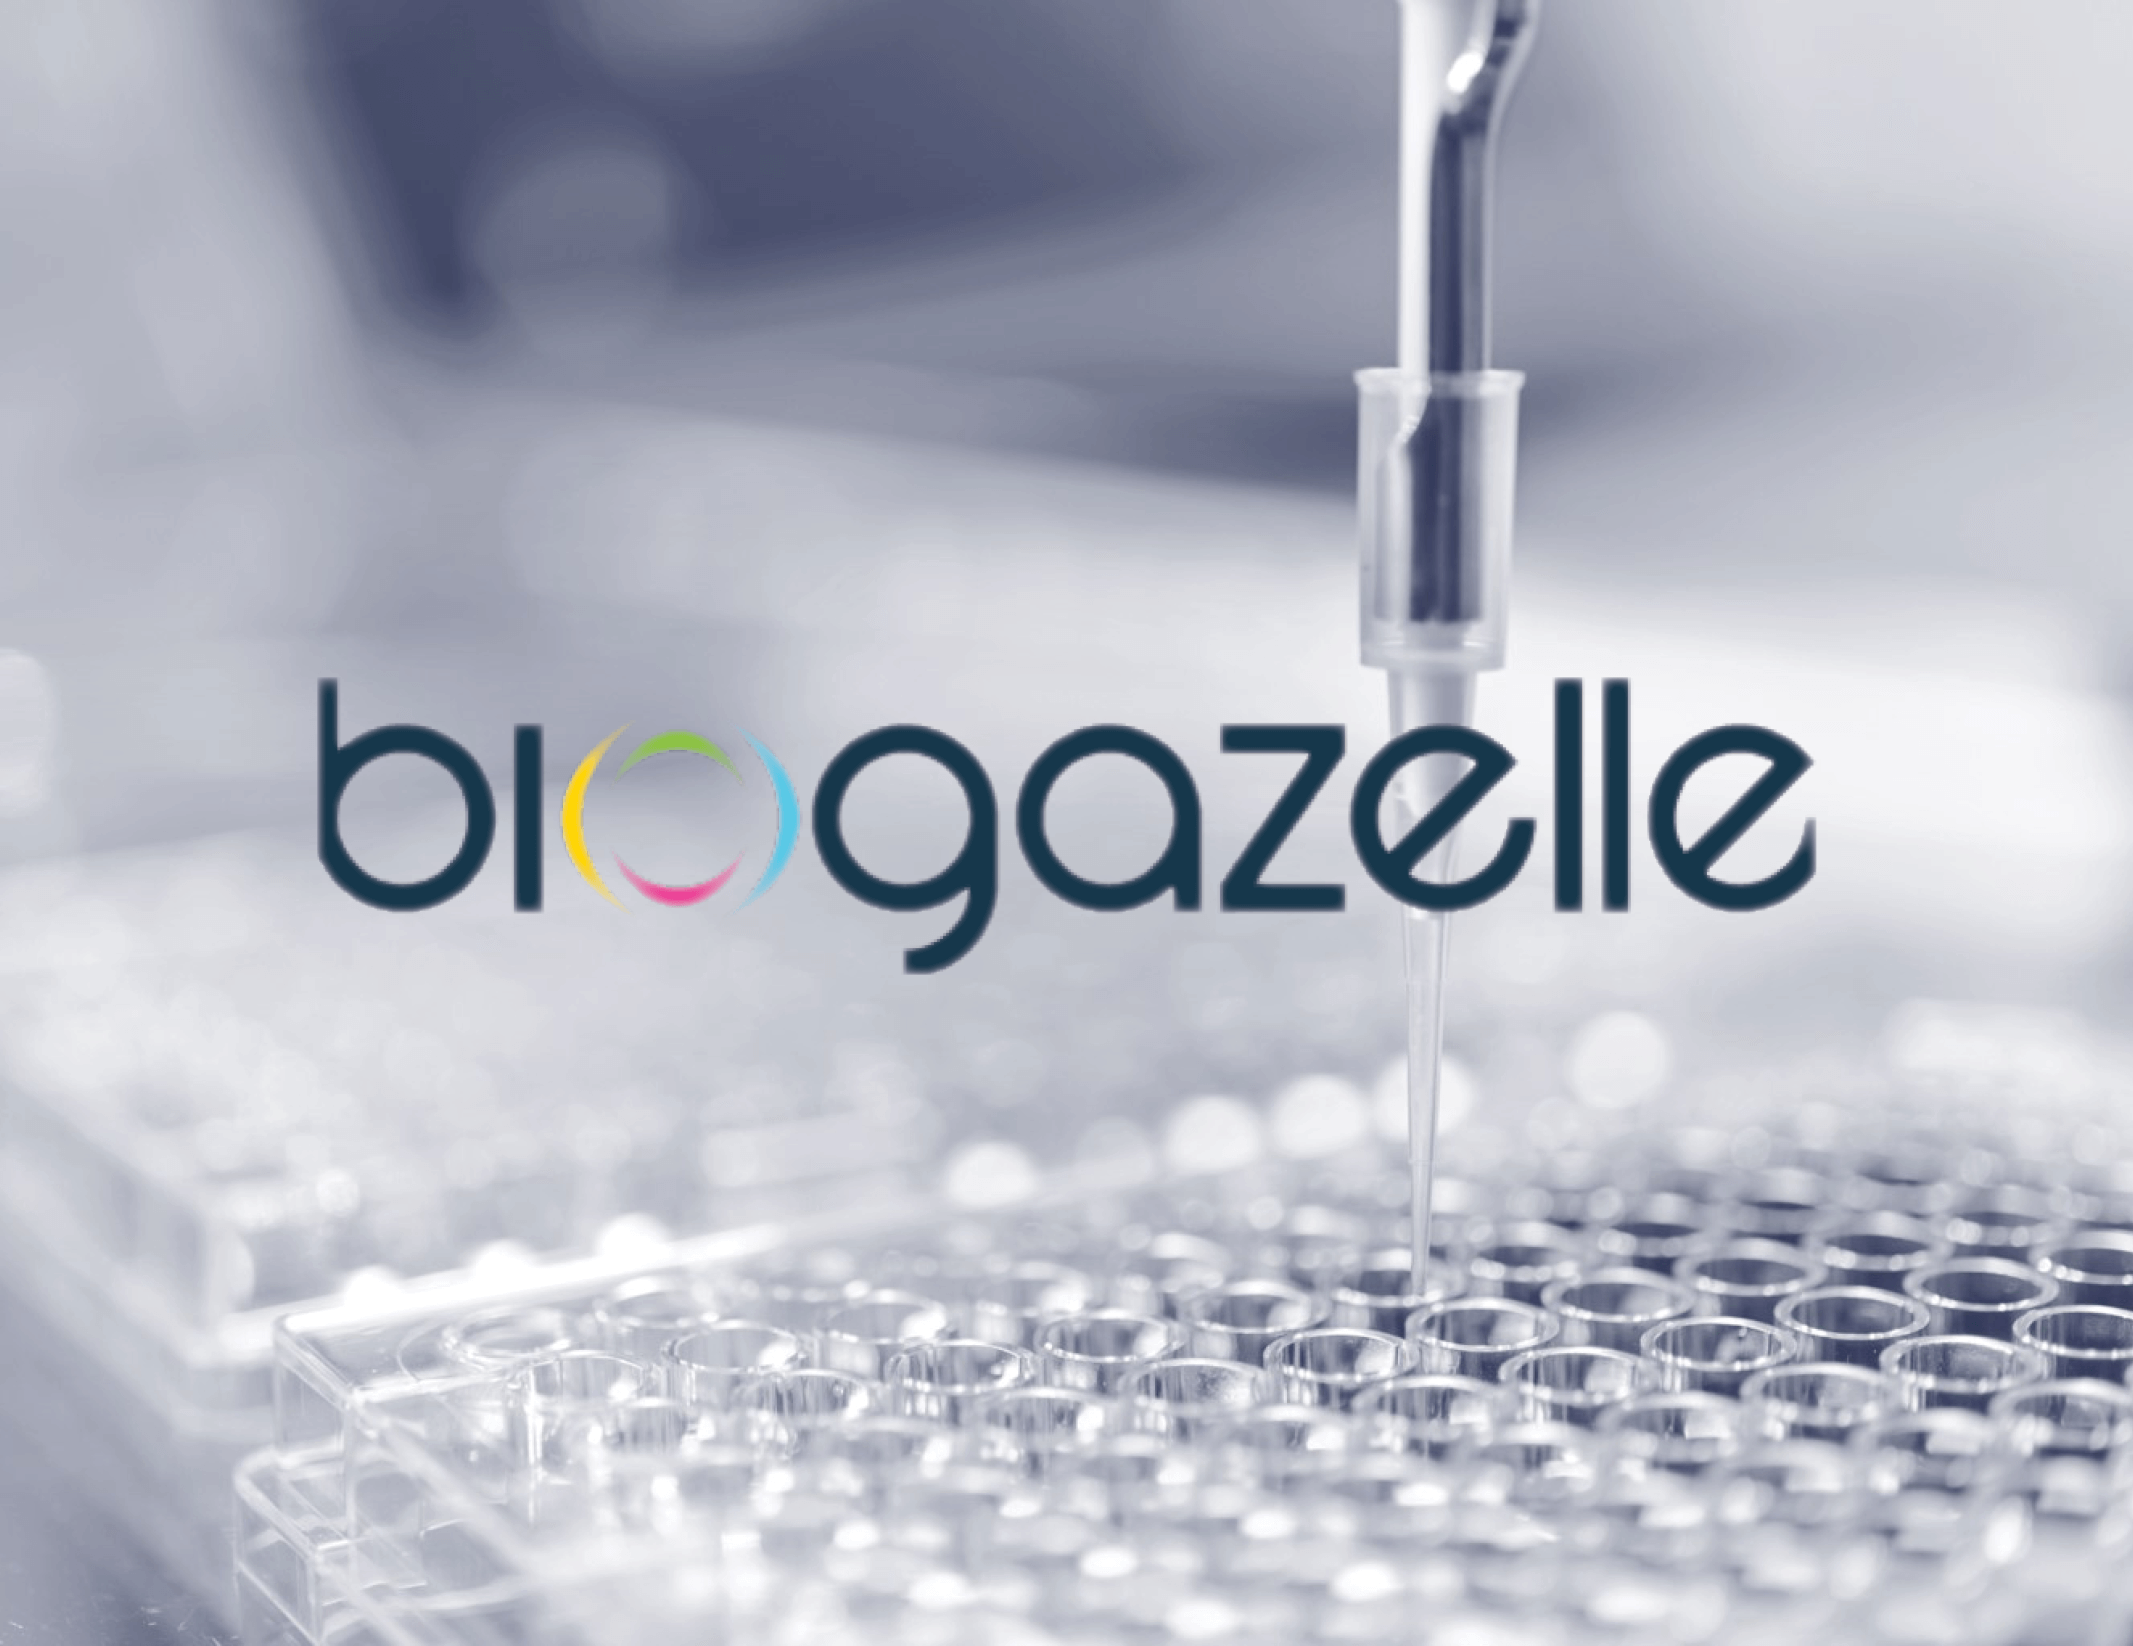 CellCarta acquires Biogazelle